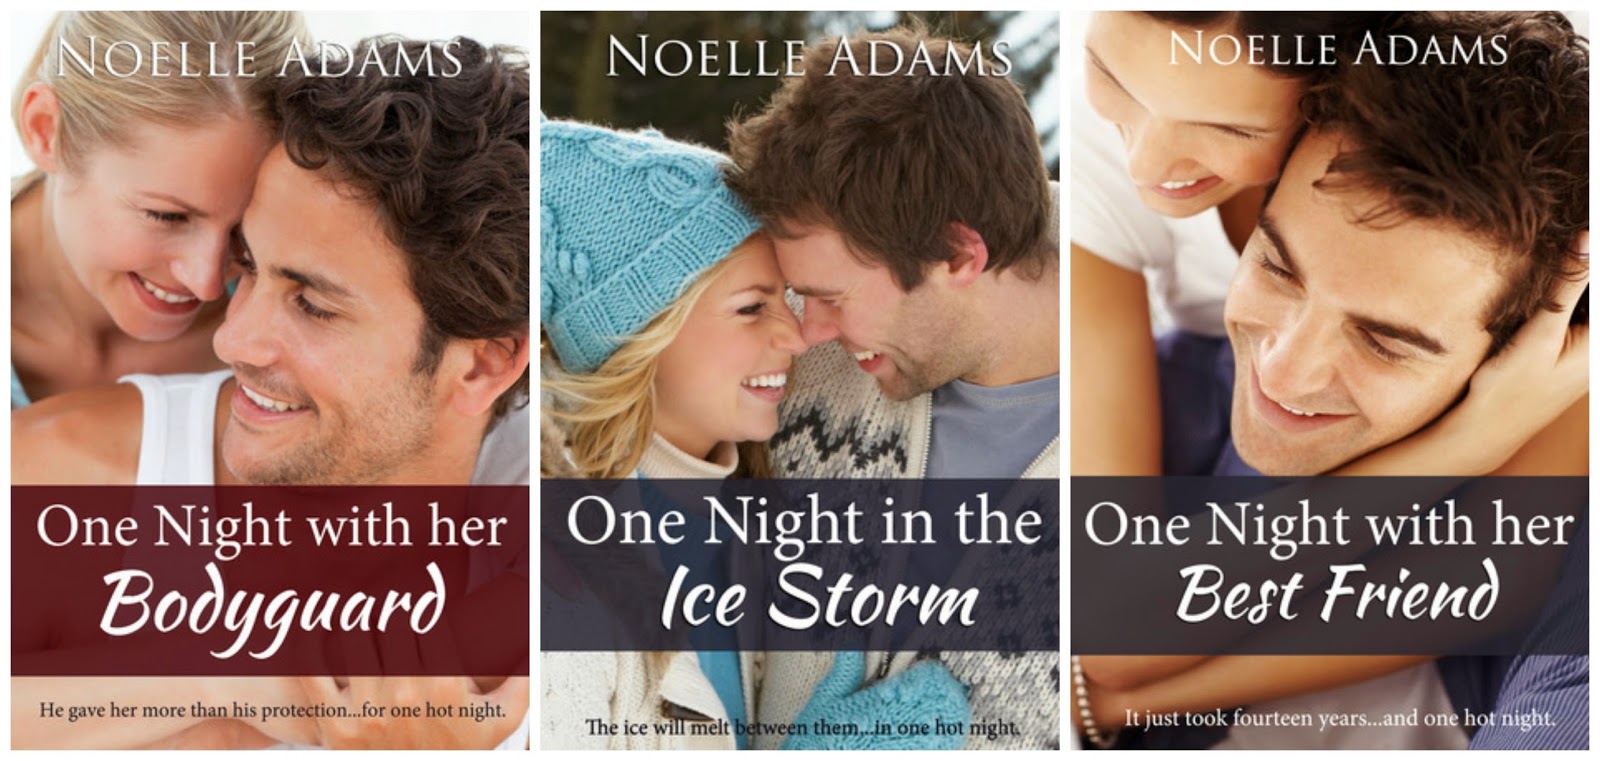 Book covers - One Night novellas by Noelle Adams